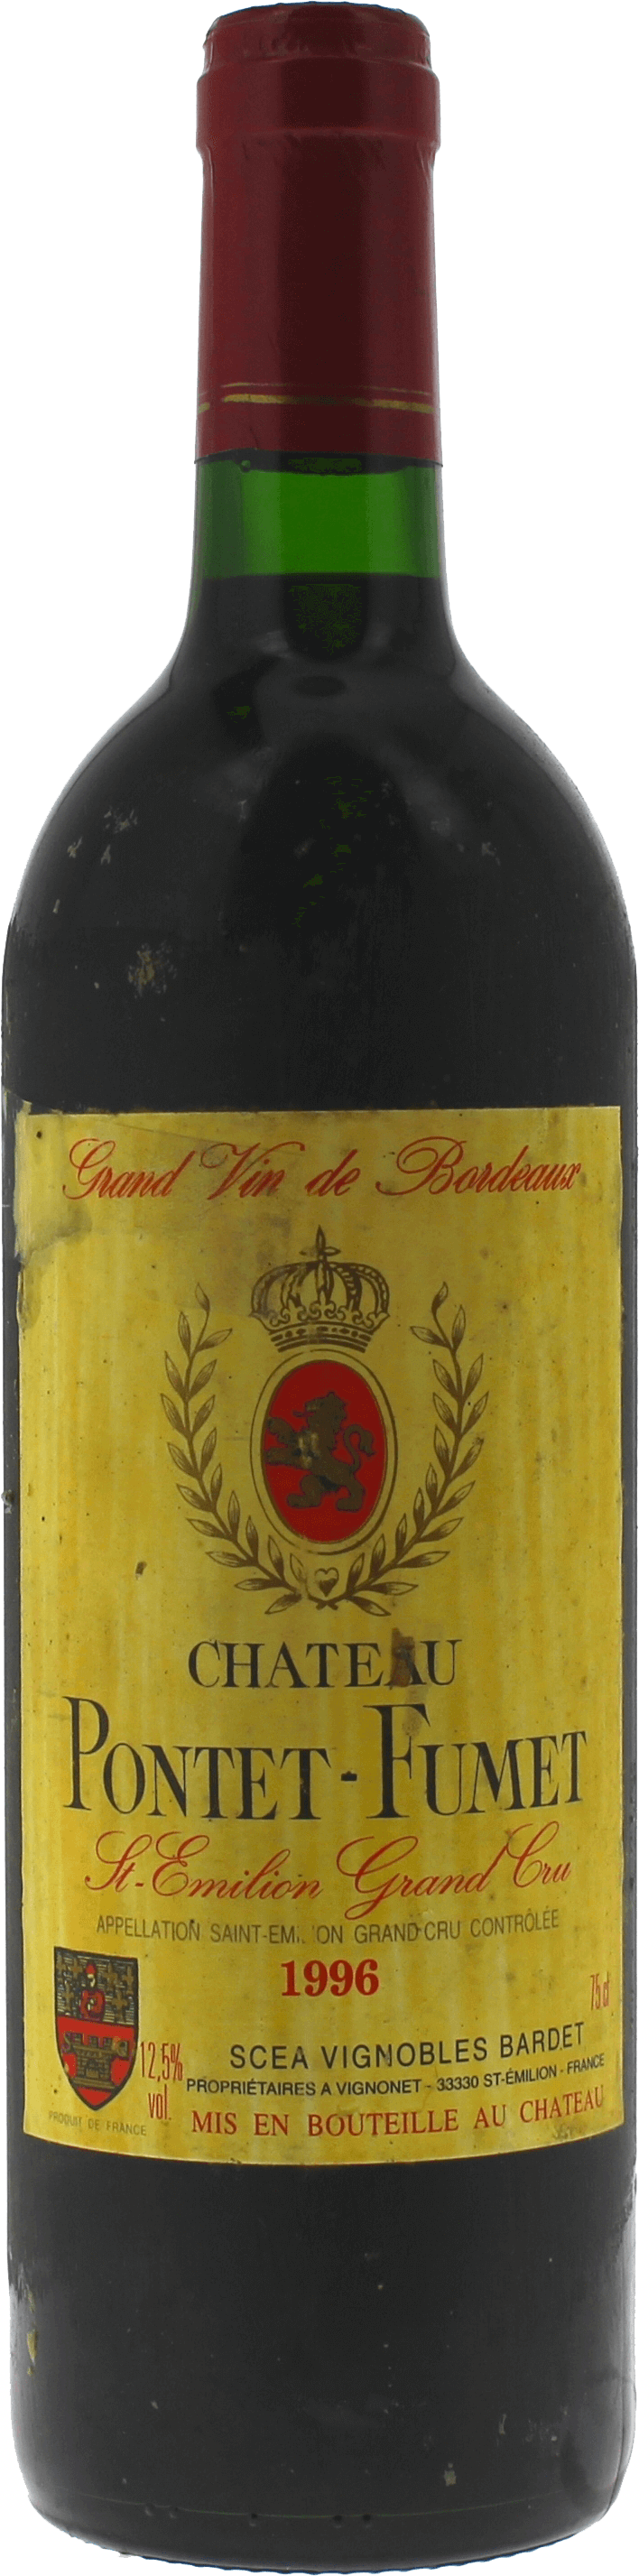 Pontet fumet 1996  Saint-Emilion, Bordeaux rouge